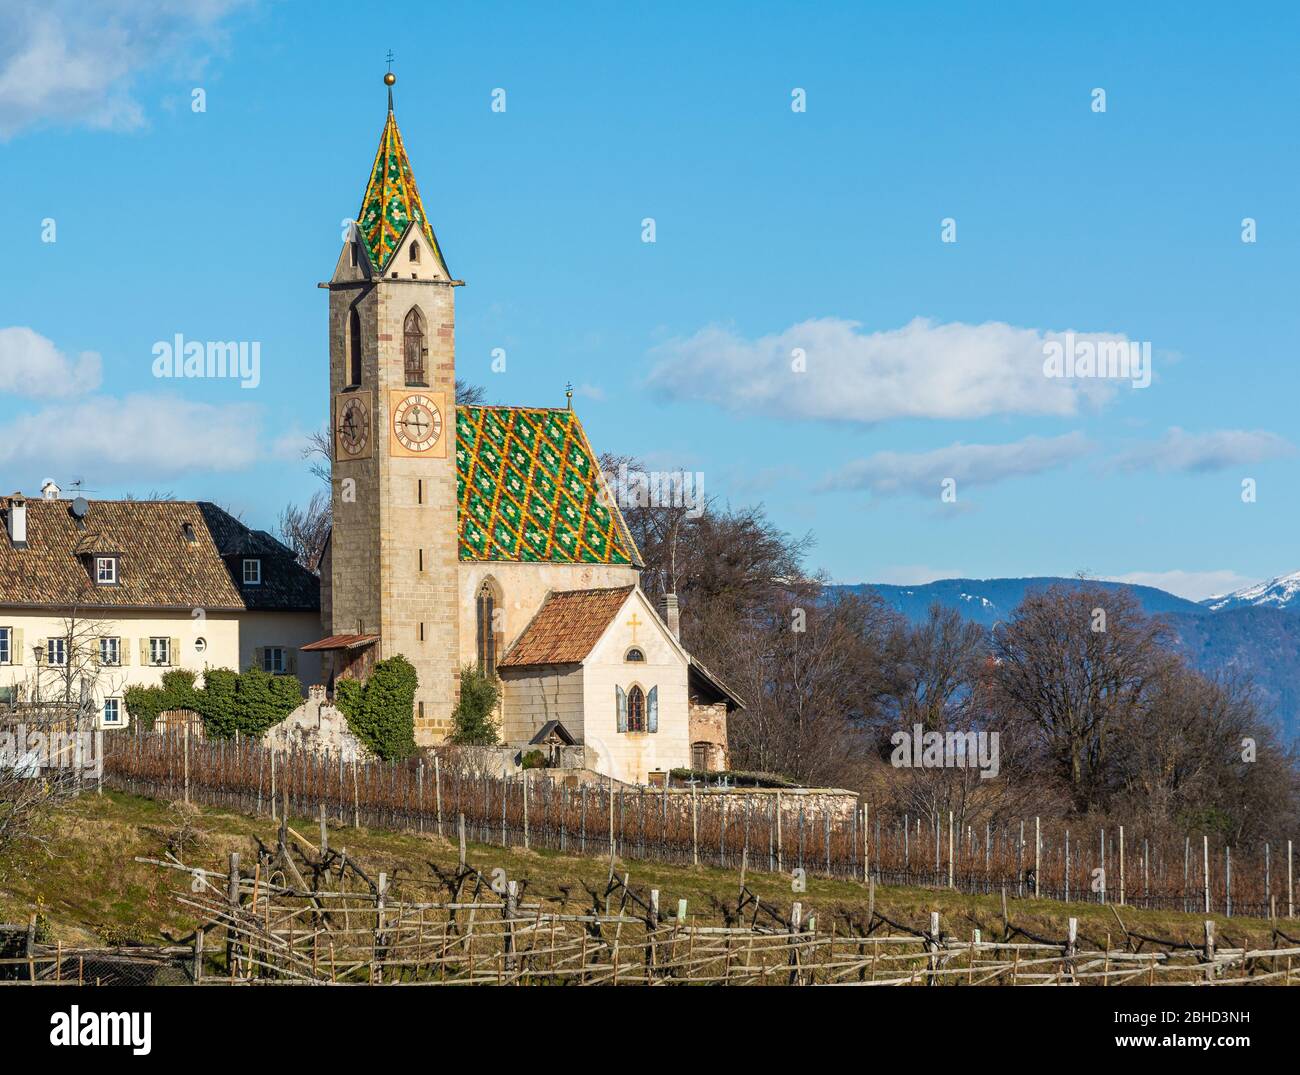 Église Saint-Vigilius à Castelvecchio, Caldaro au Tyrol du Sud, au nord de l'Italie, en Europe. Église de style gothique Banque D'Images